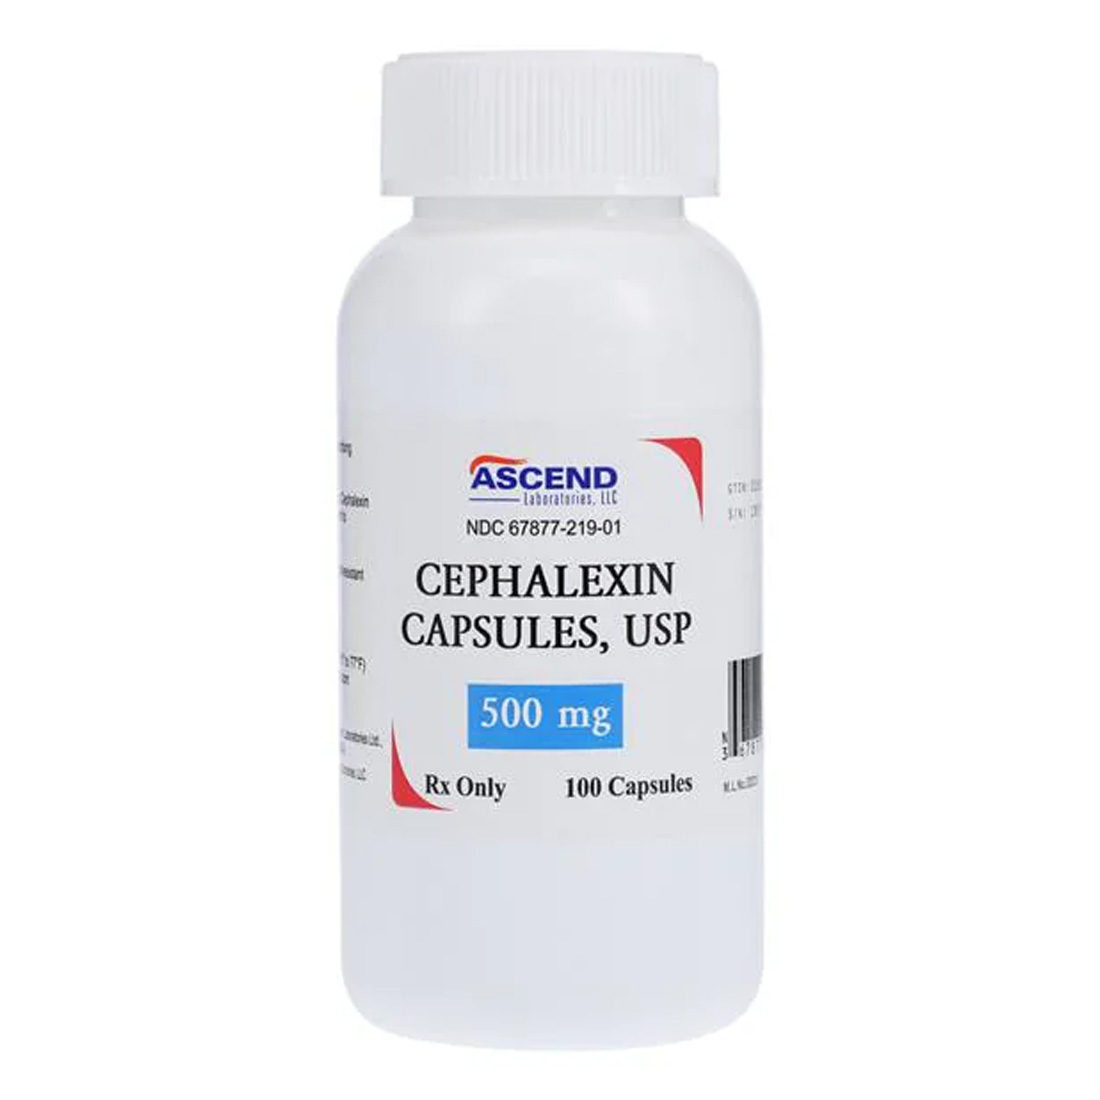 Cephalexin 500mg Capsules - 100/Bottle